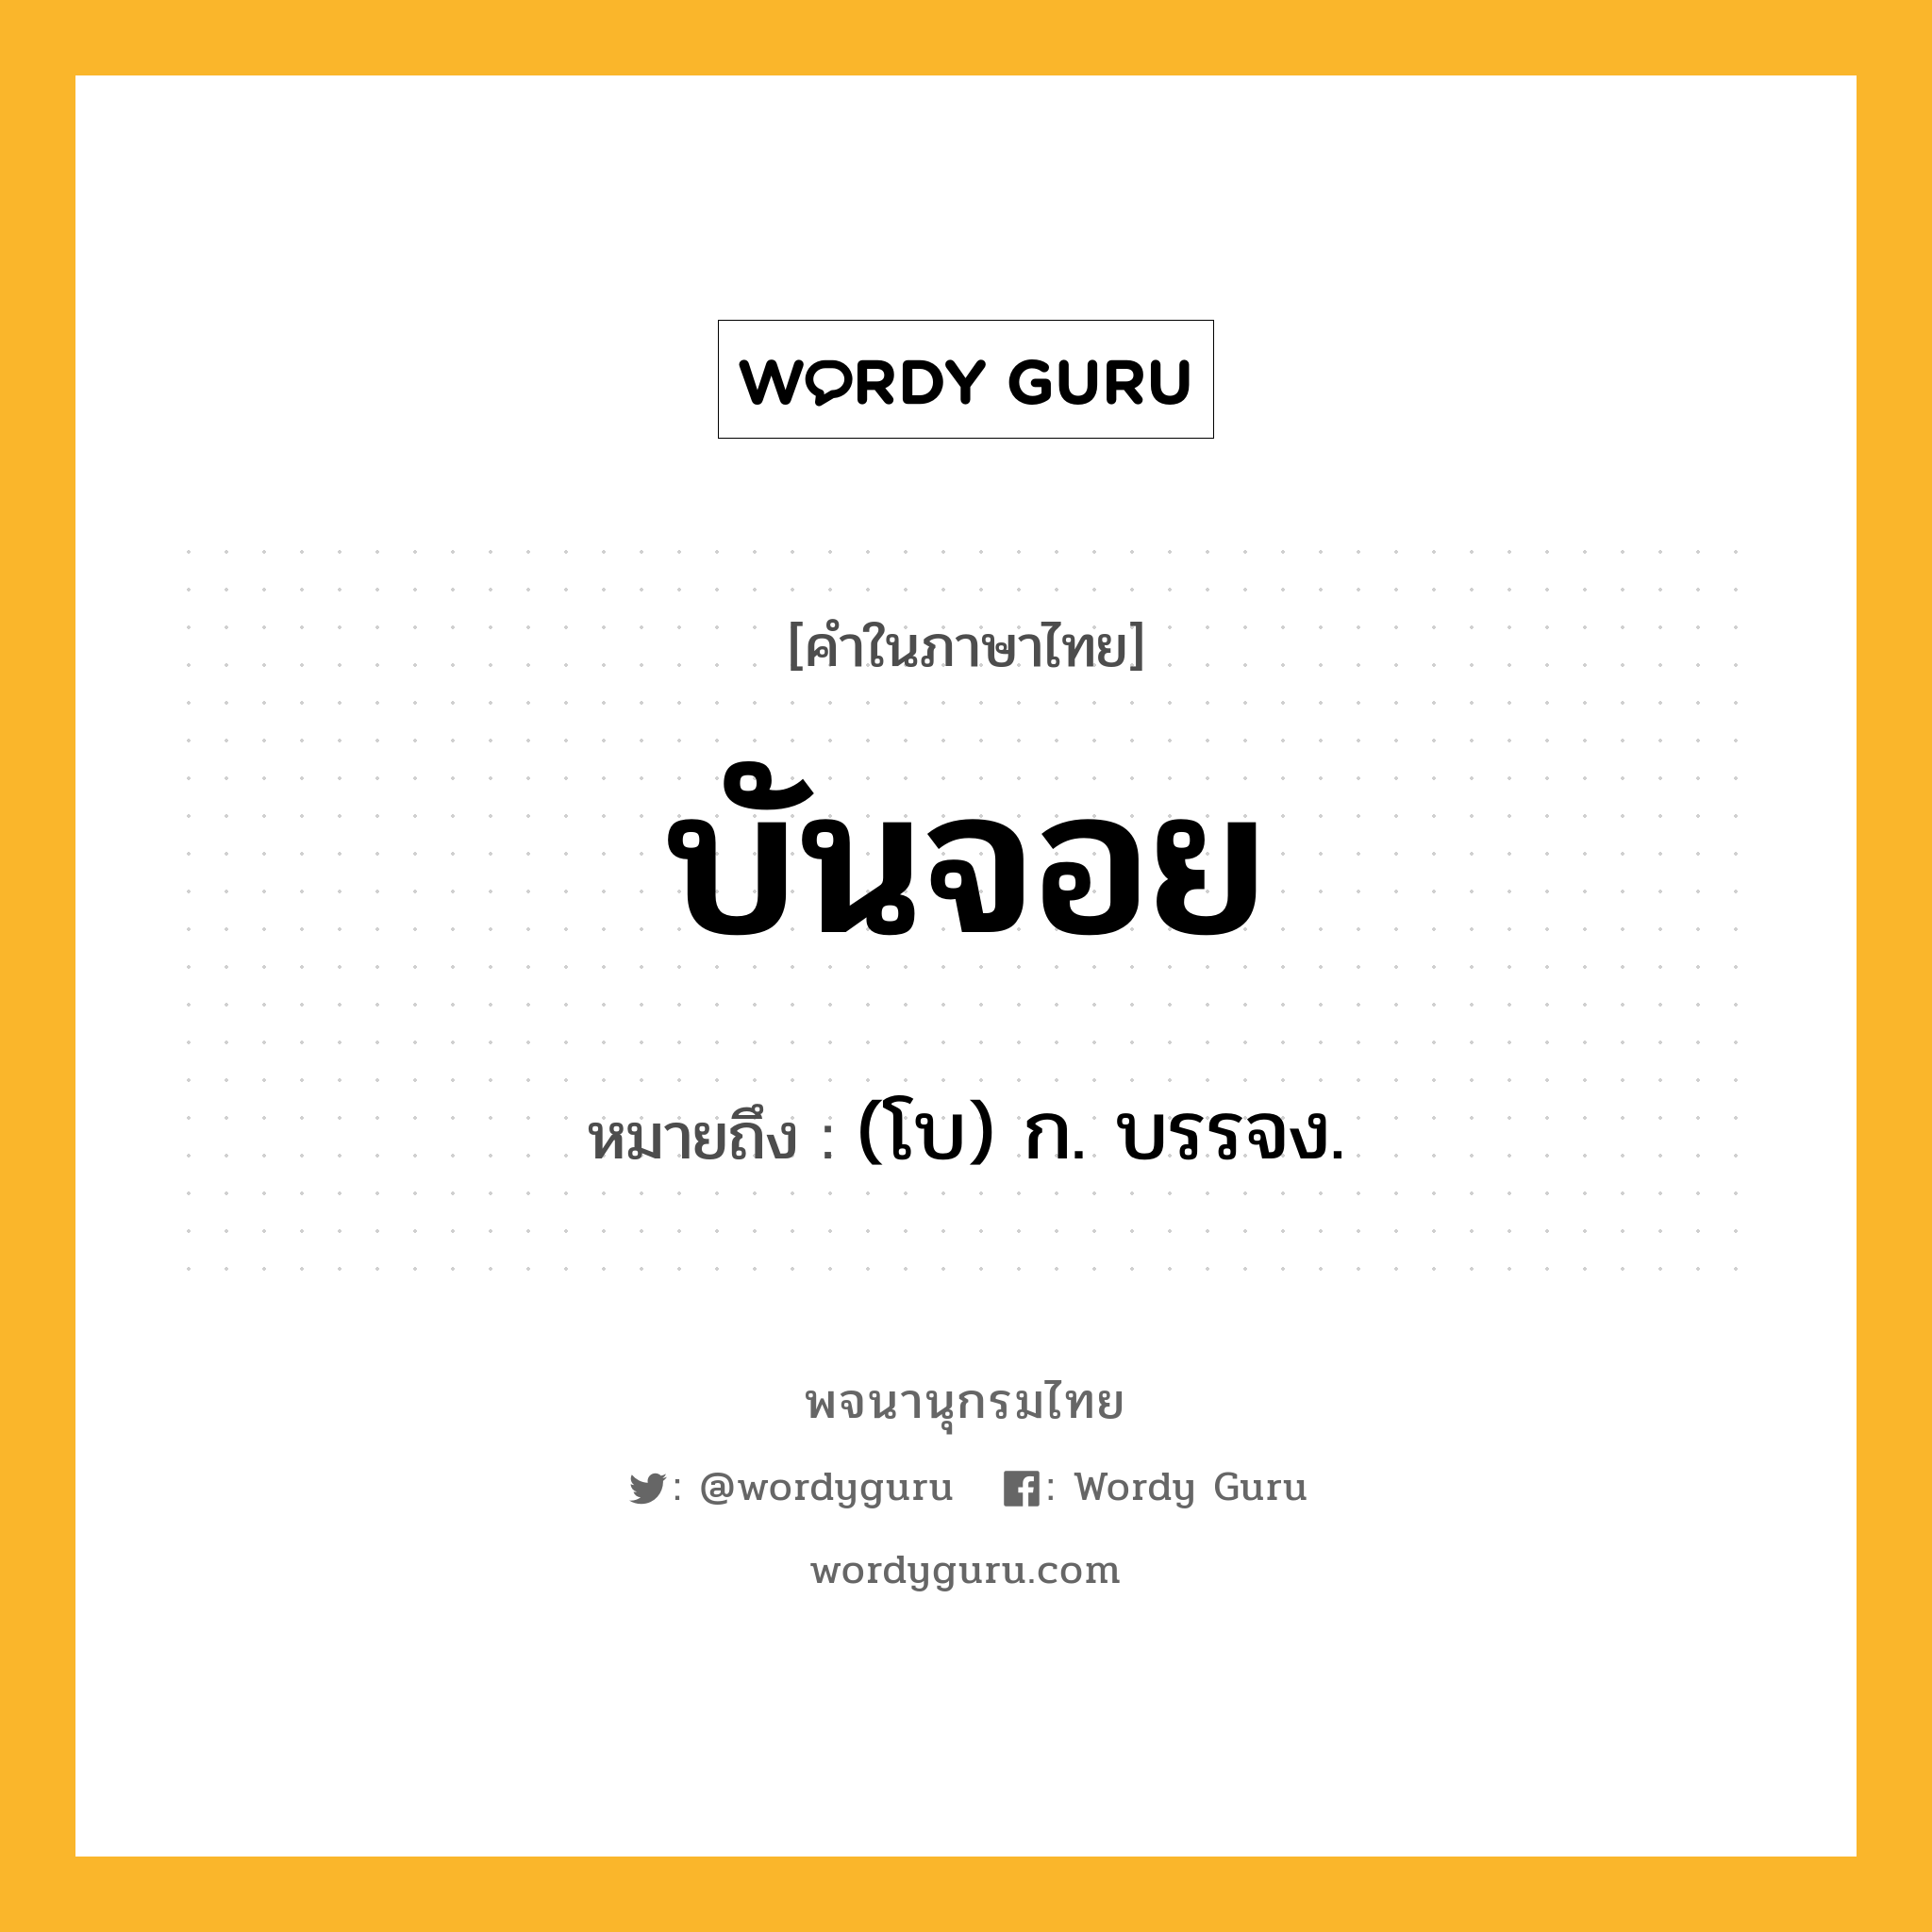 บันจอย ความหมาย หมายถึงอะไร?, คำในภาษาไทย บันจอย หมายถึง (โบ) ก. บรรจง.